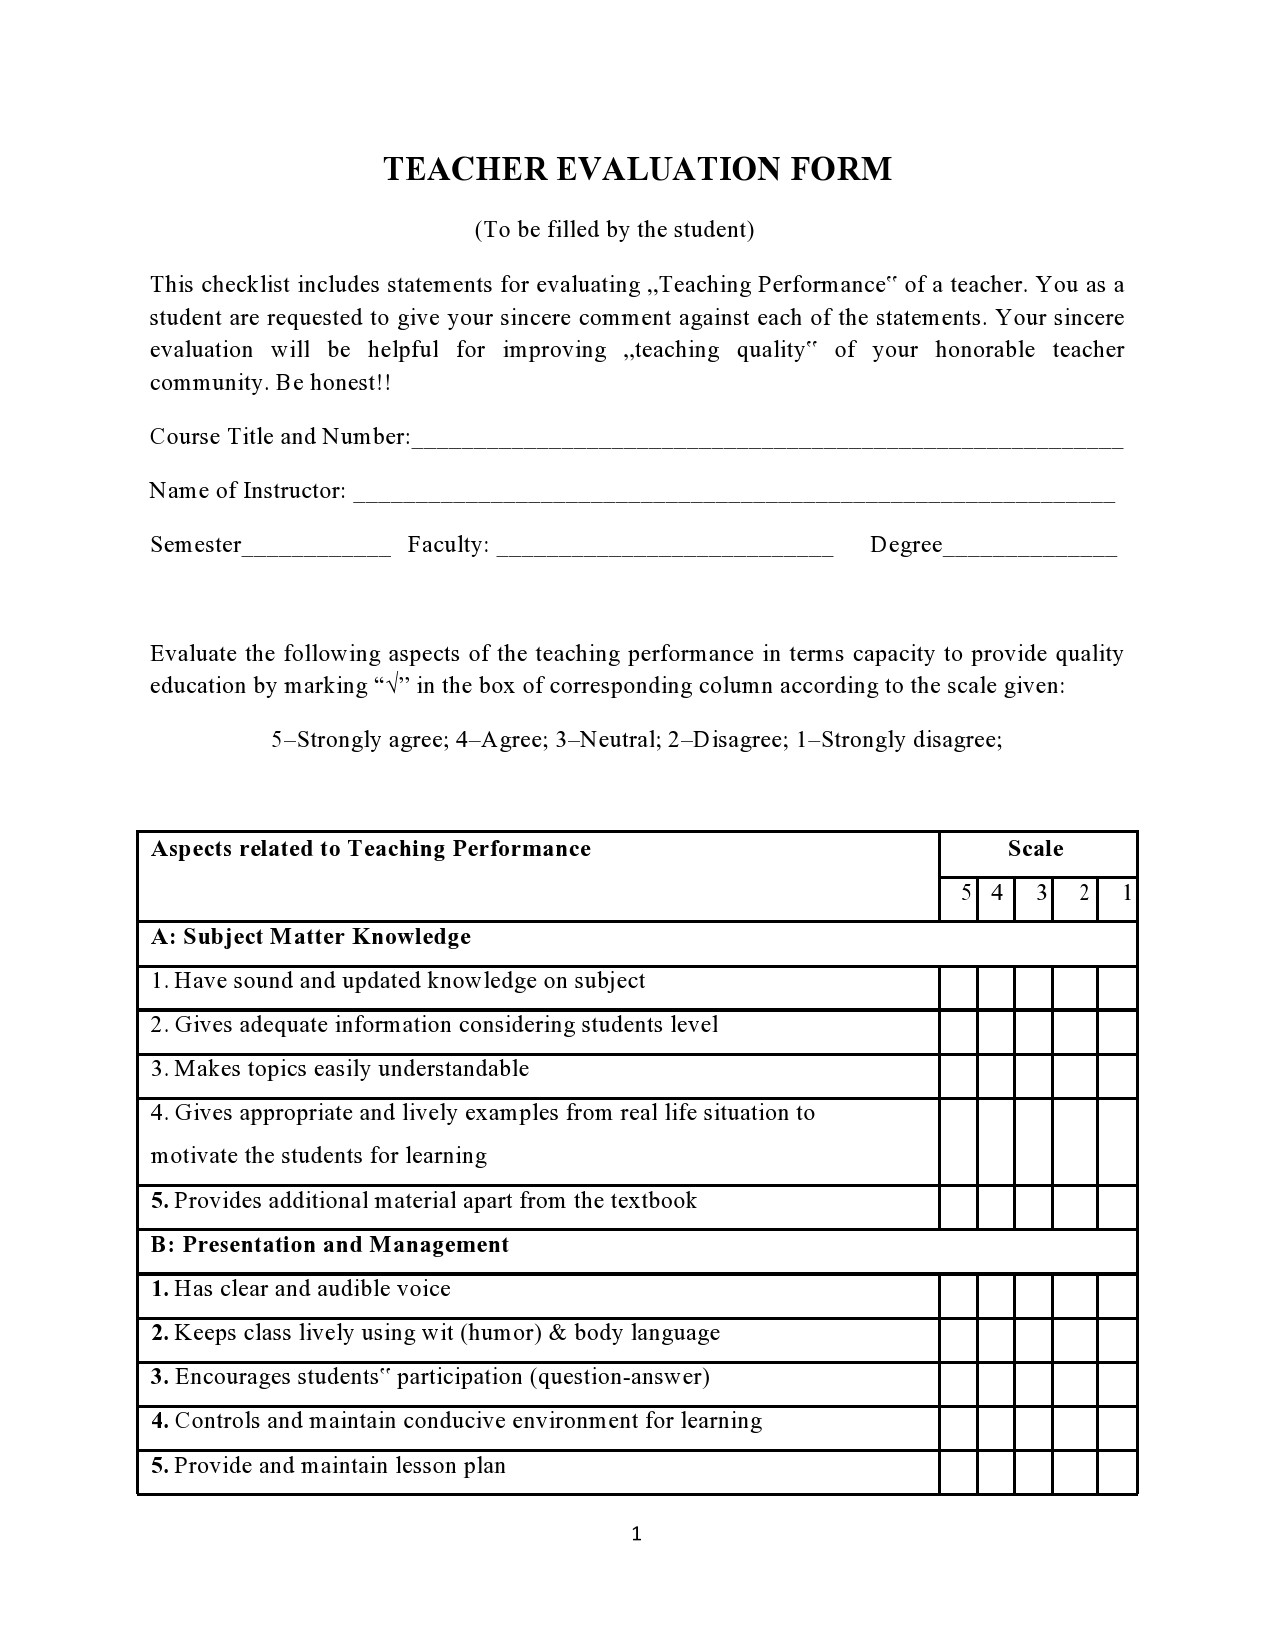 Formulario de evaluación docente gratuito 04